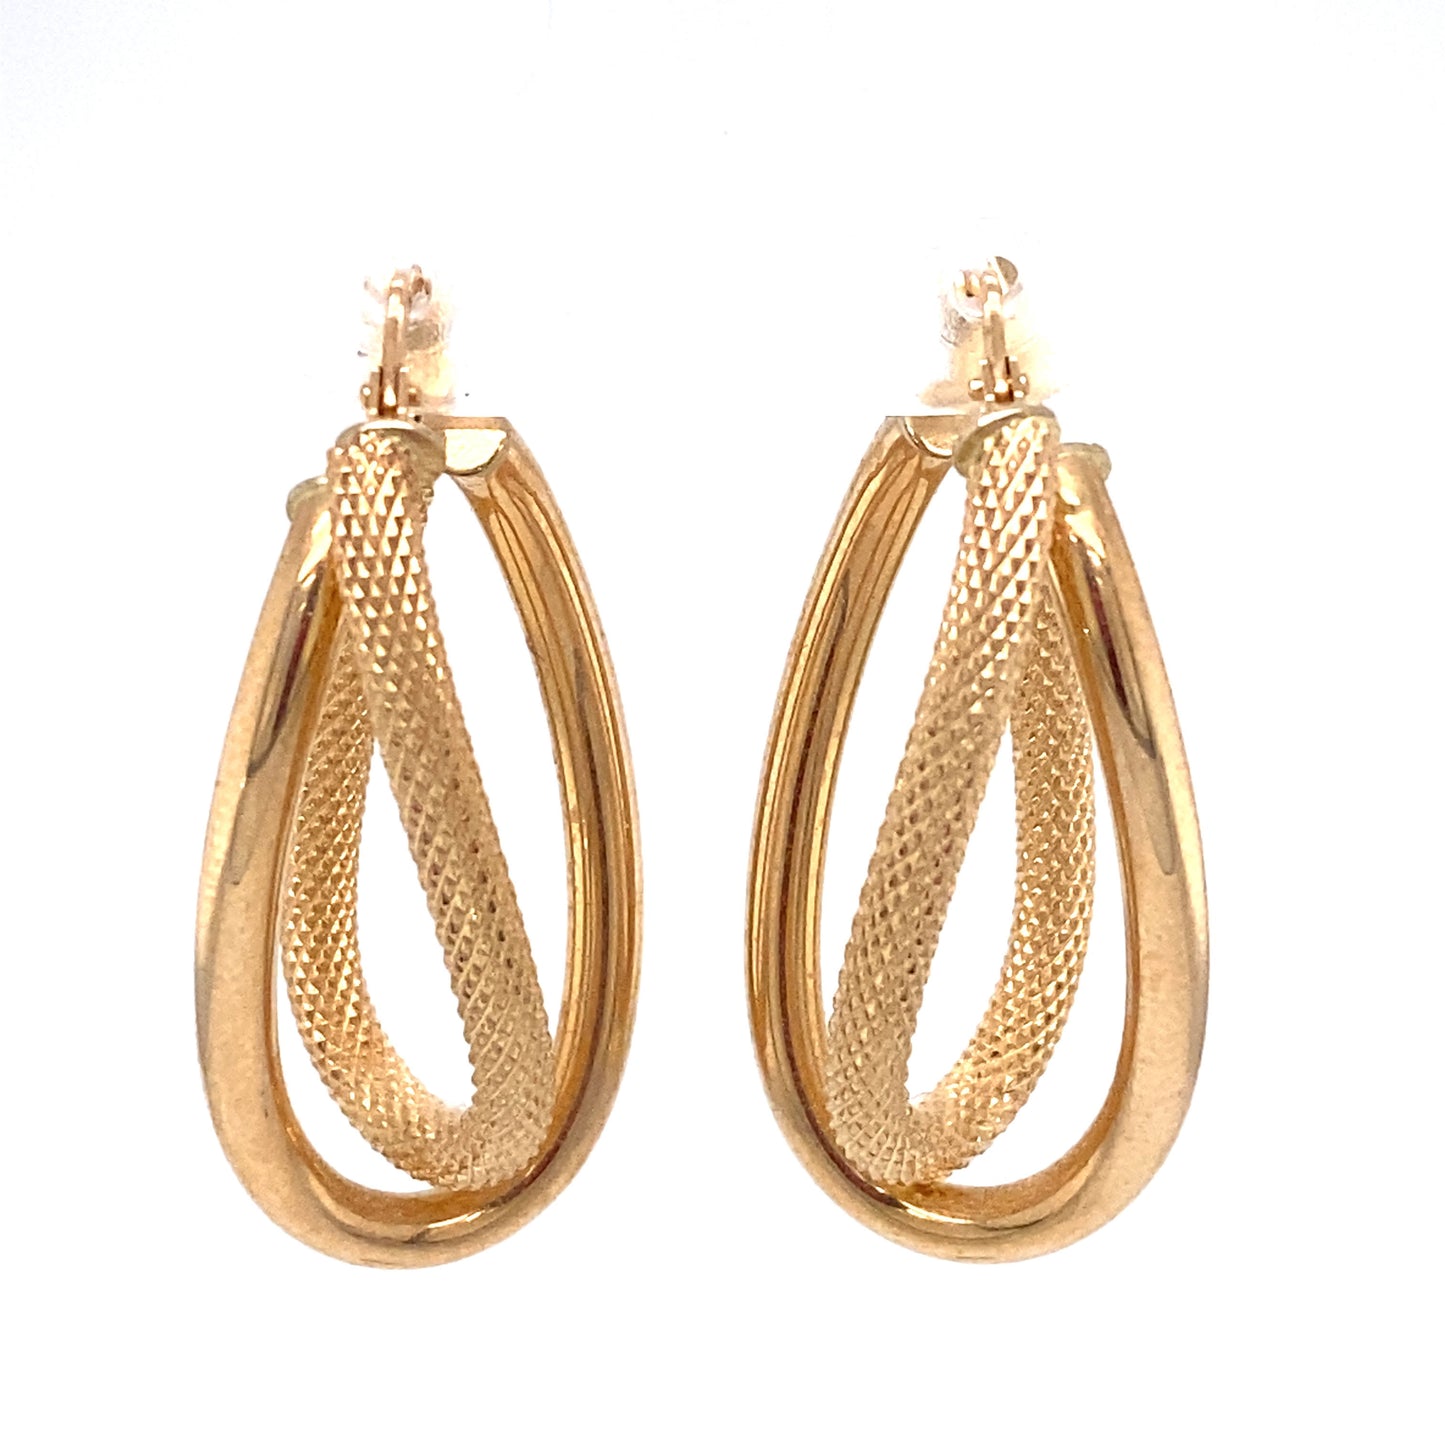 Circa 1990s Italian Twisted Oblong Double Hoop Earrings in 14K Gold